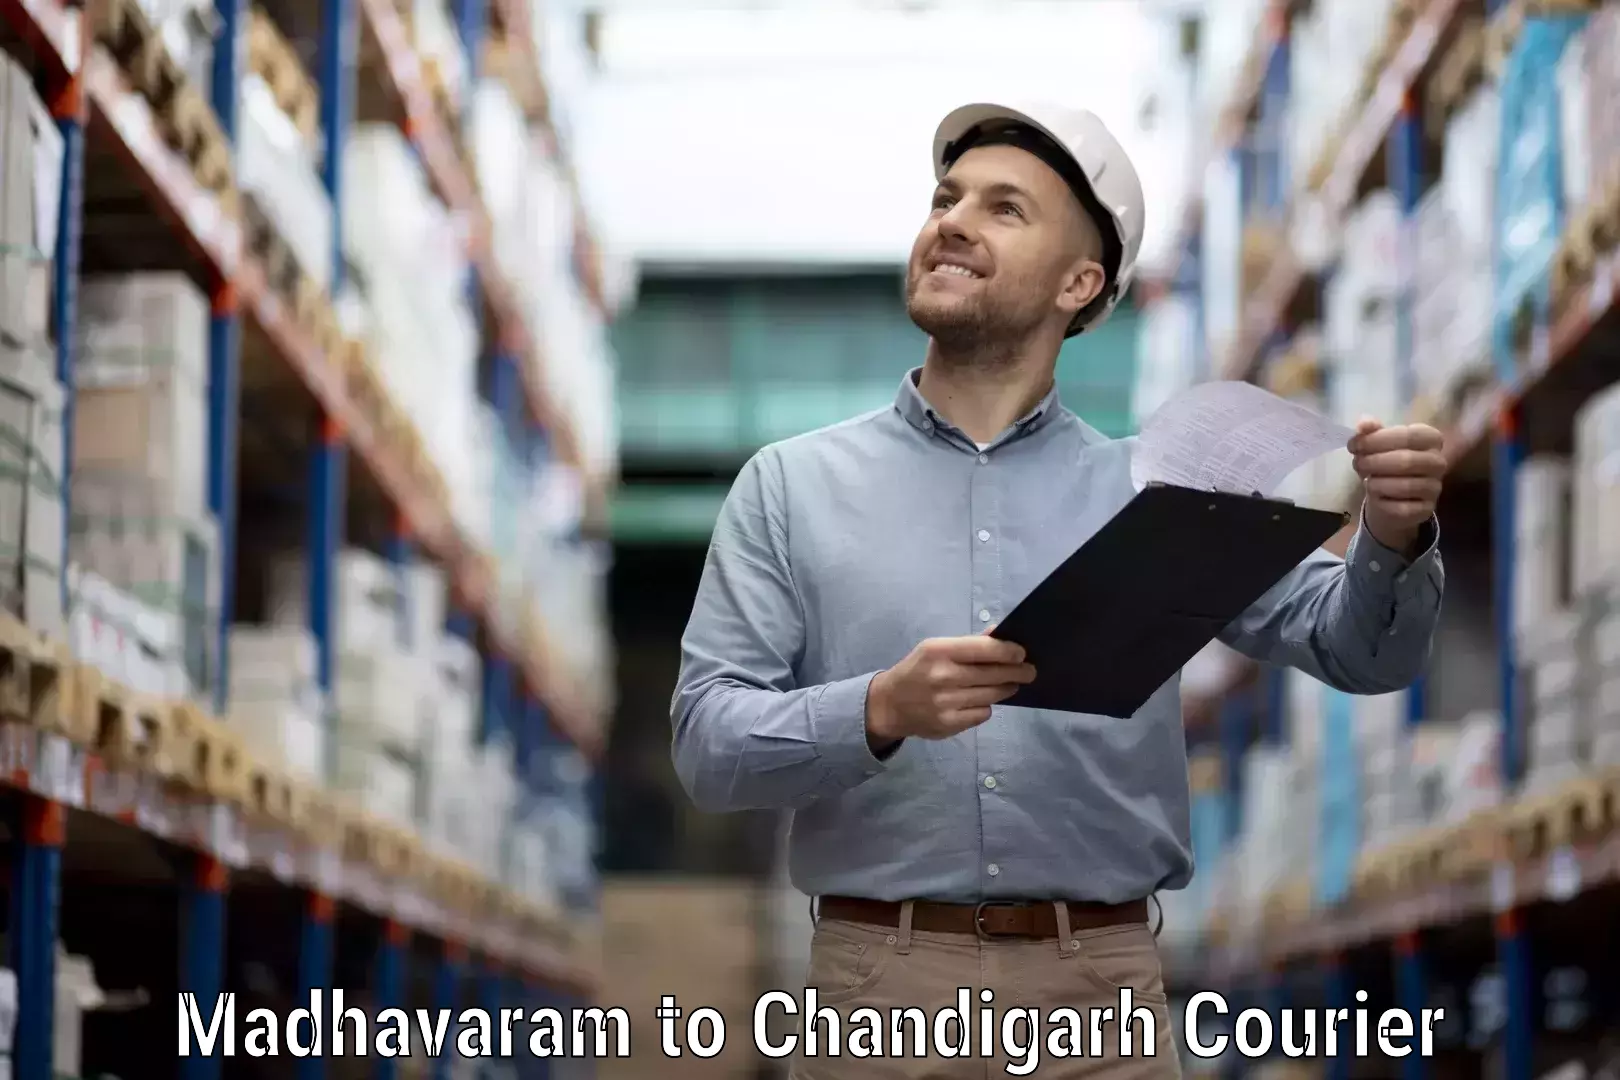 Efficient parcel service Madhavaram to Chandigarh